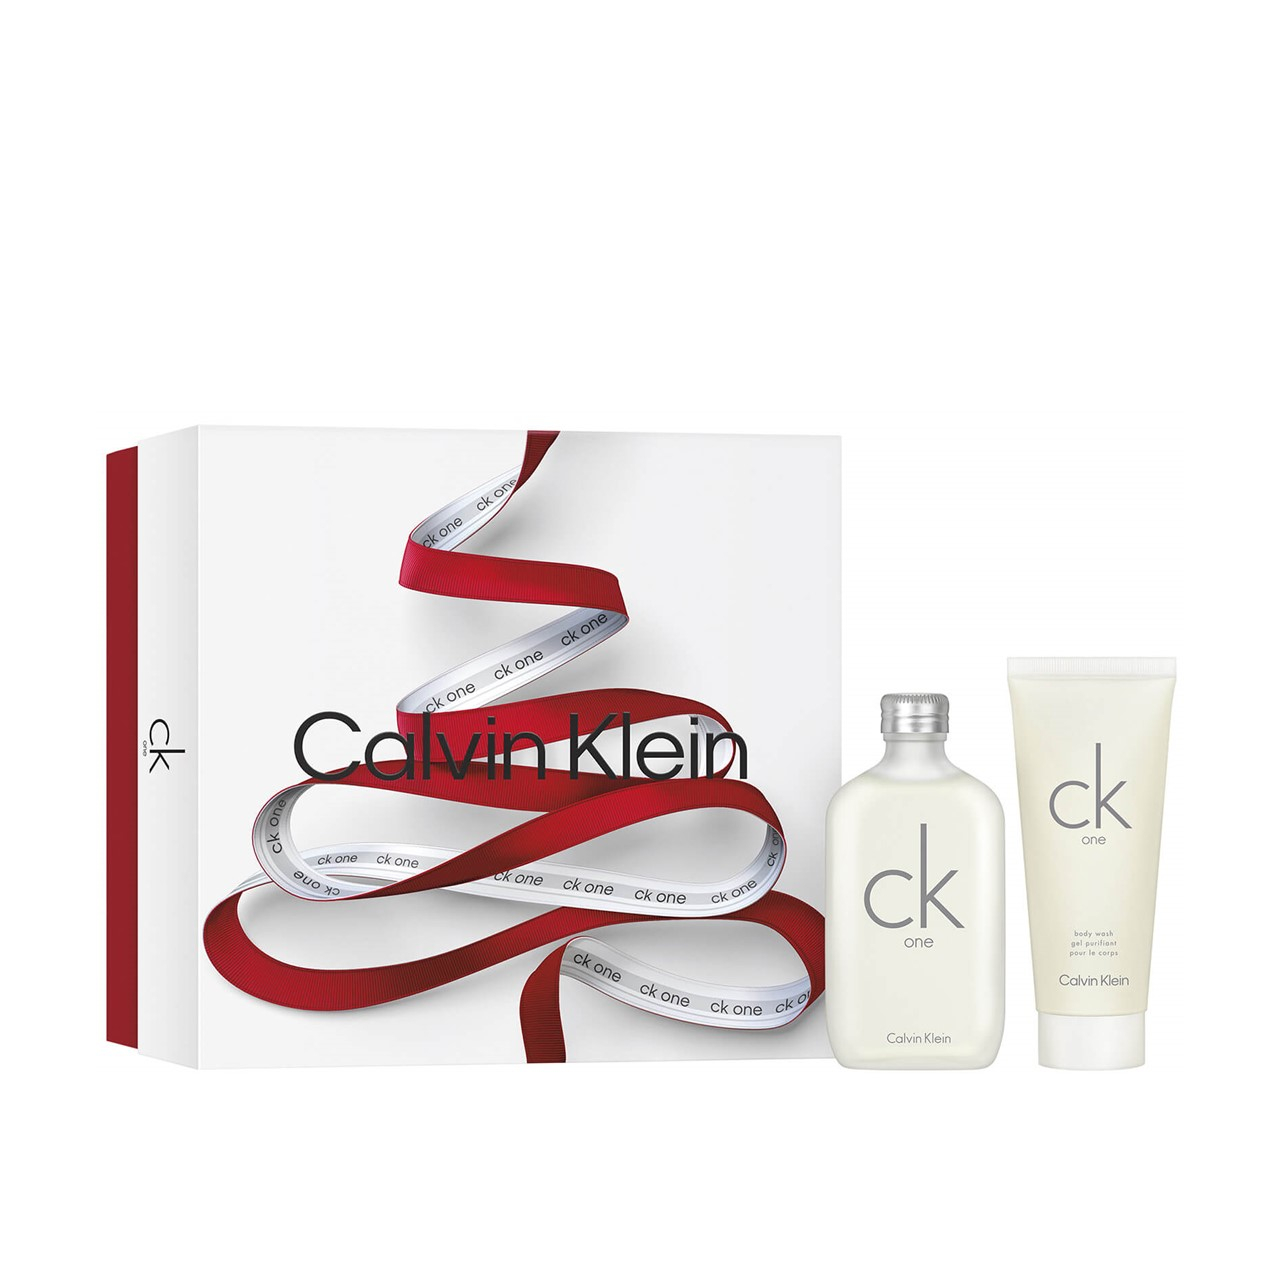 Buy de Toilette oz) Eau Coffret 200ml CK Calvin Klein One USA (6.8fl ·